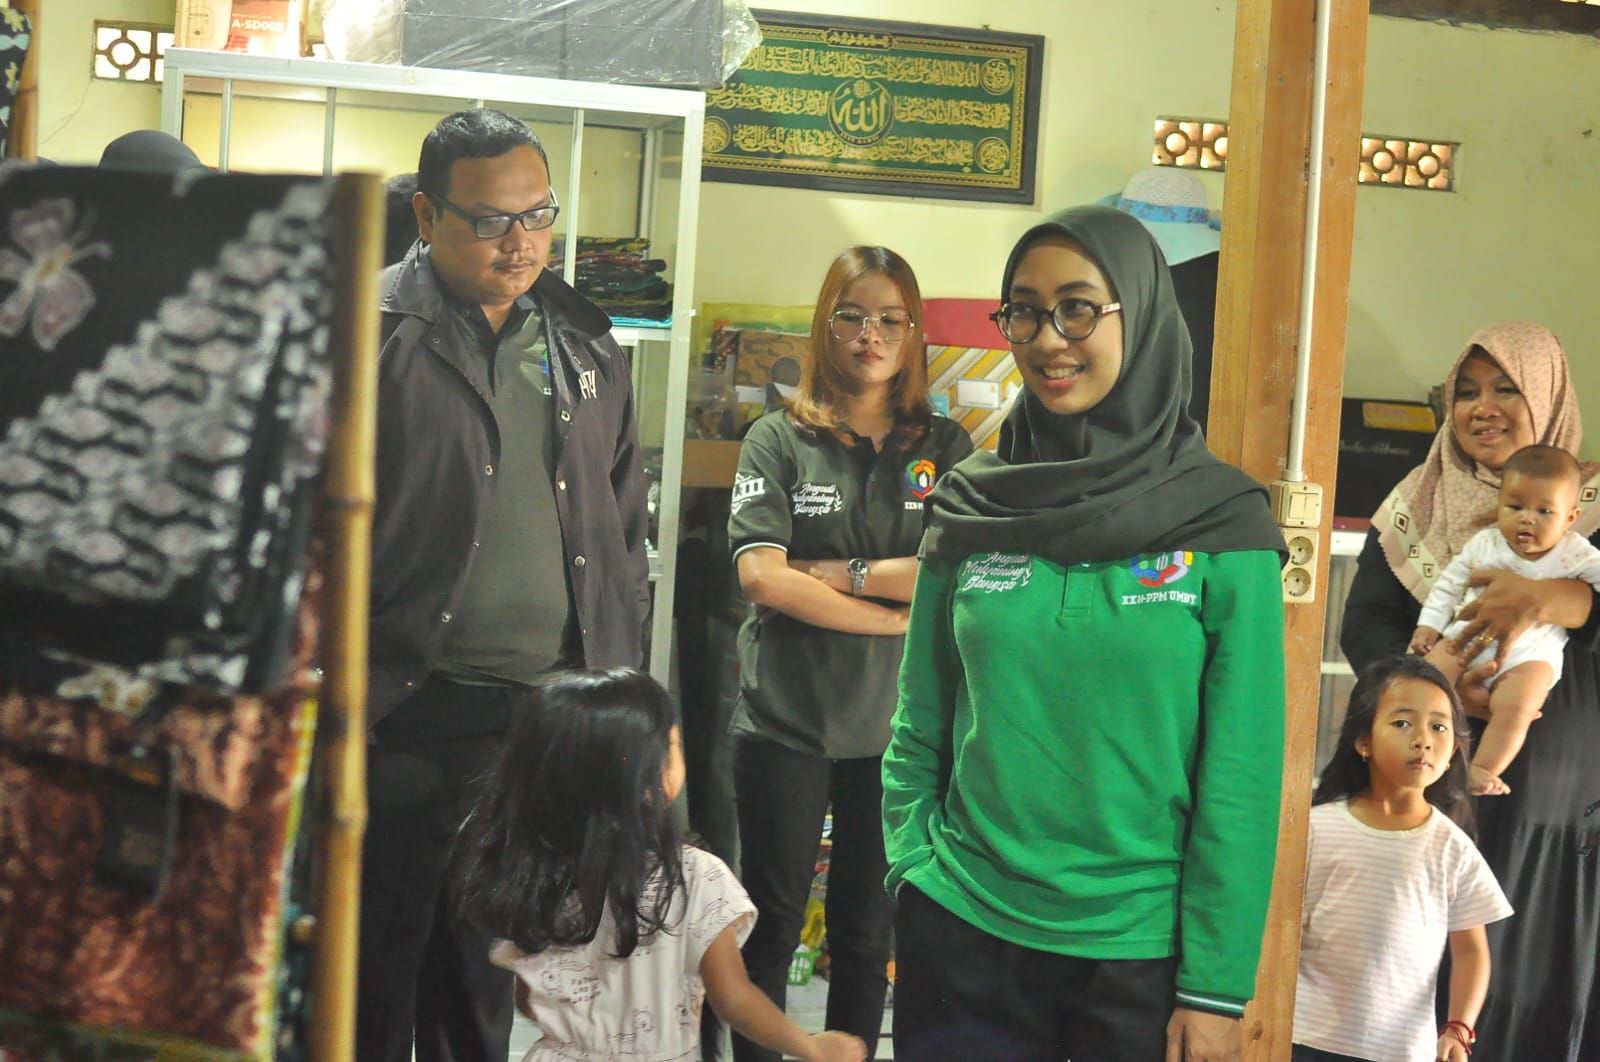 Sebagai upaya meningkatkan kualitas UMKM di Gunung Kidul, mahasiswa KKN Universitas Mercu Buana Yogyakarta (UMBY) kelompok 88 menyelenggarakan sosialisasi Program Aktivasi Digital Marketing pada UMKM Batik Cangkring Bansari.